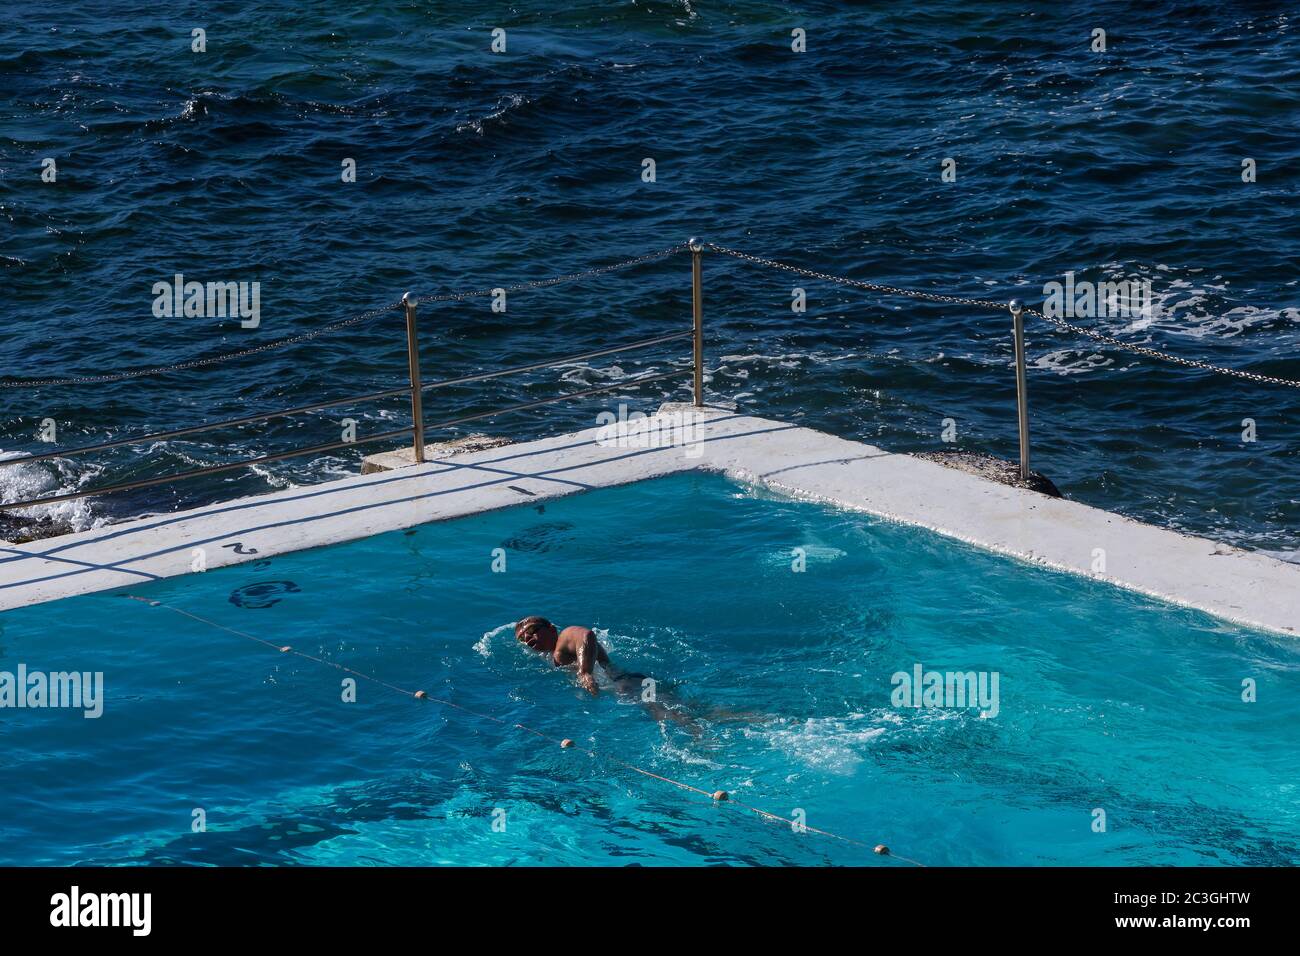 Sydney, Australia. Sabato 20 giugno 2020. Il Bondi iceberg Pool prima settimana aperto da quando le restrizioni del coronavirus sono state attenuate in periferia orientale di Sydney.Credit Paul Lovelace/Alamy Live News Foto Stock